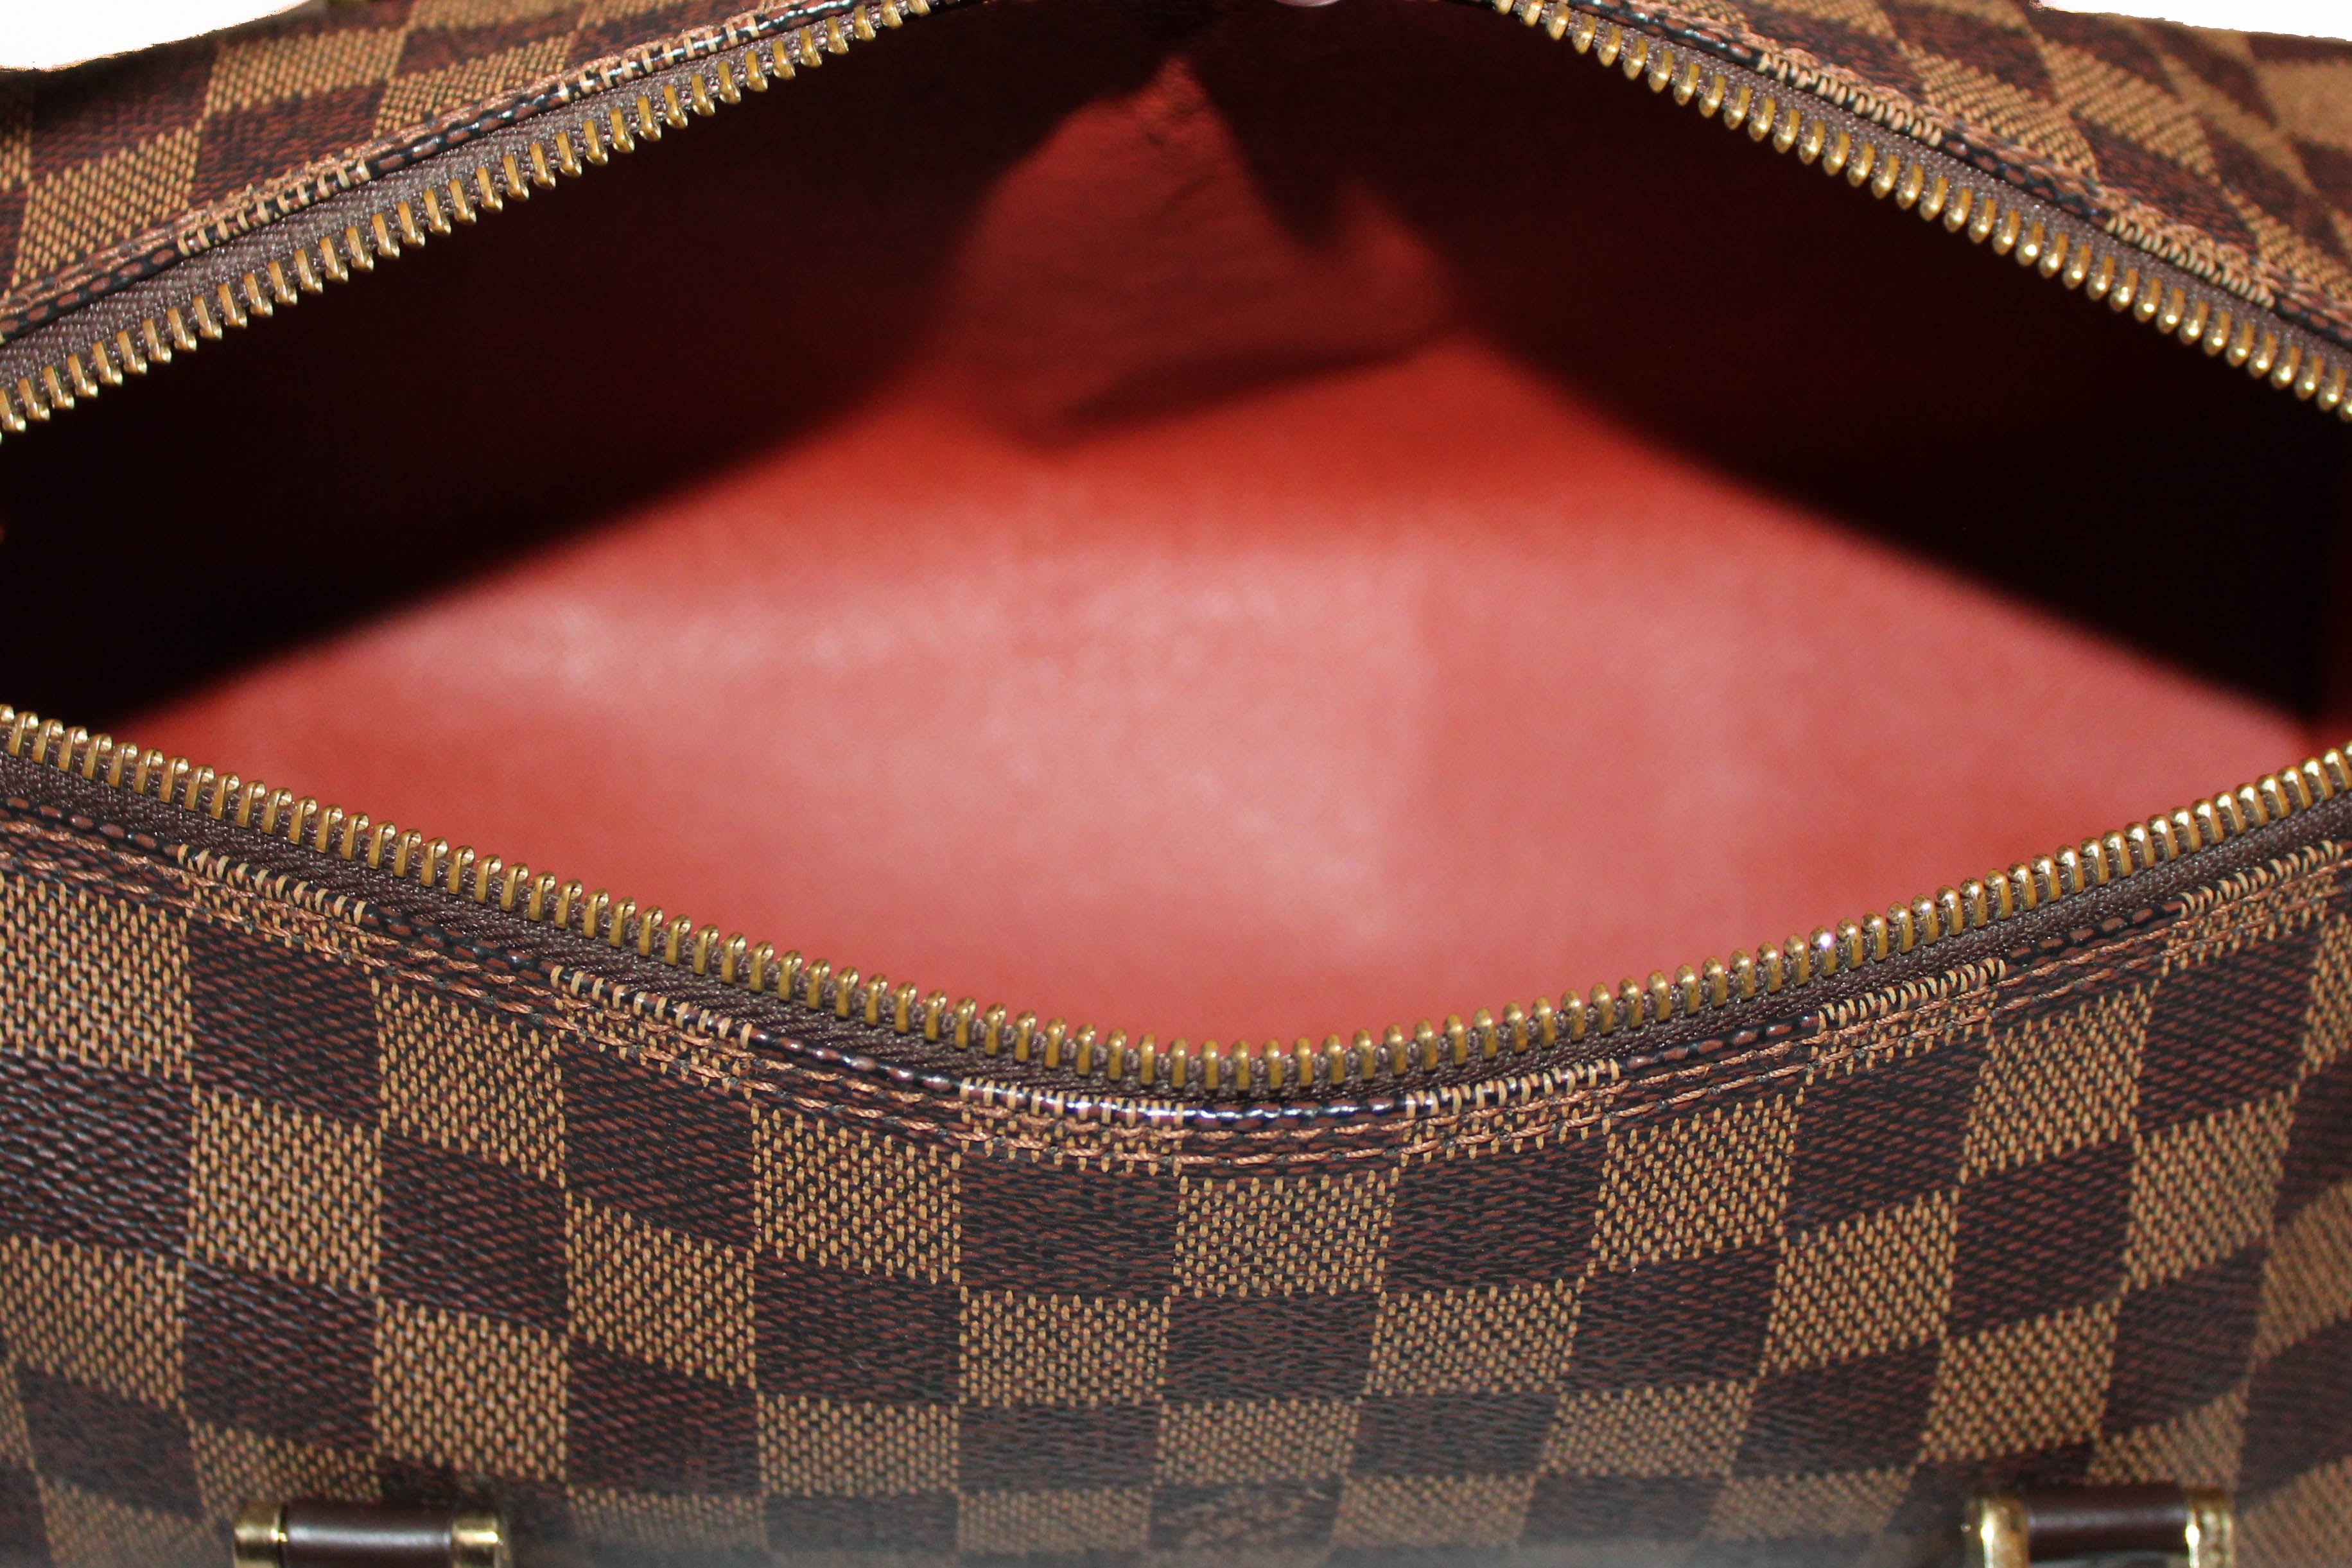 Authentic Louis Vuitton Damier Ebene Papillon 26 Handbag